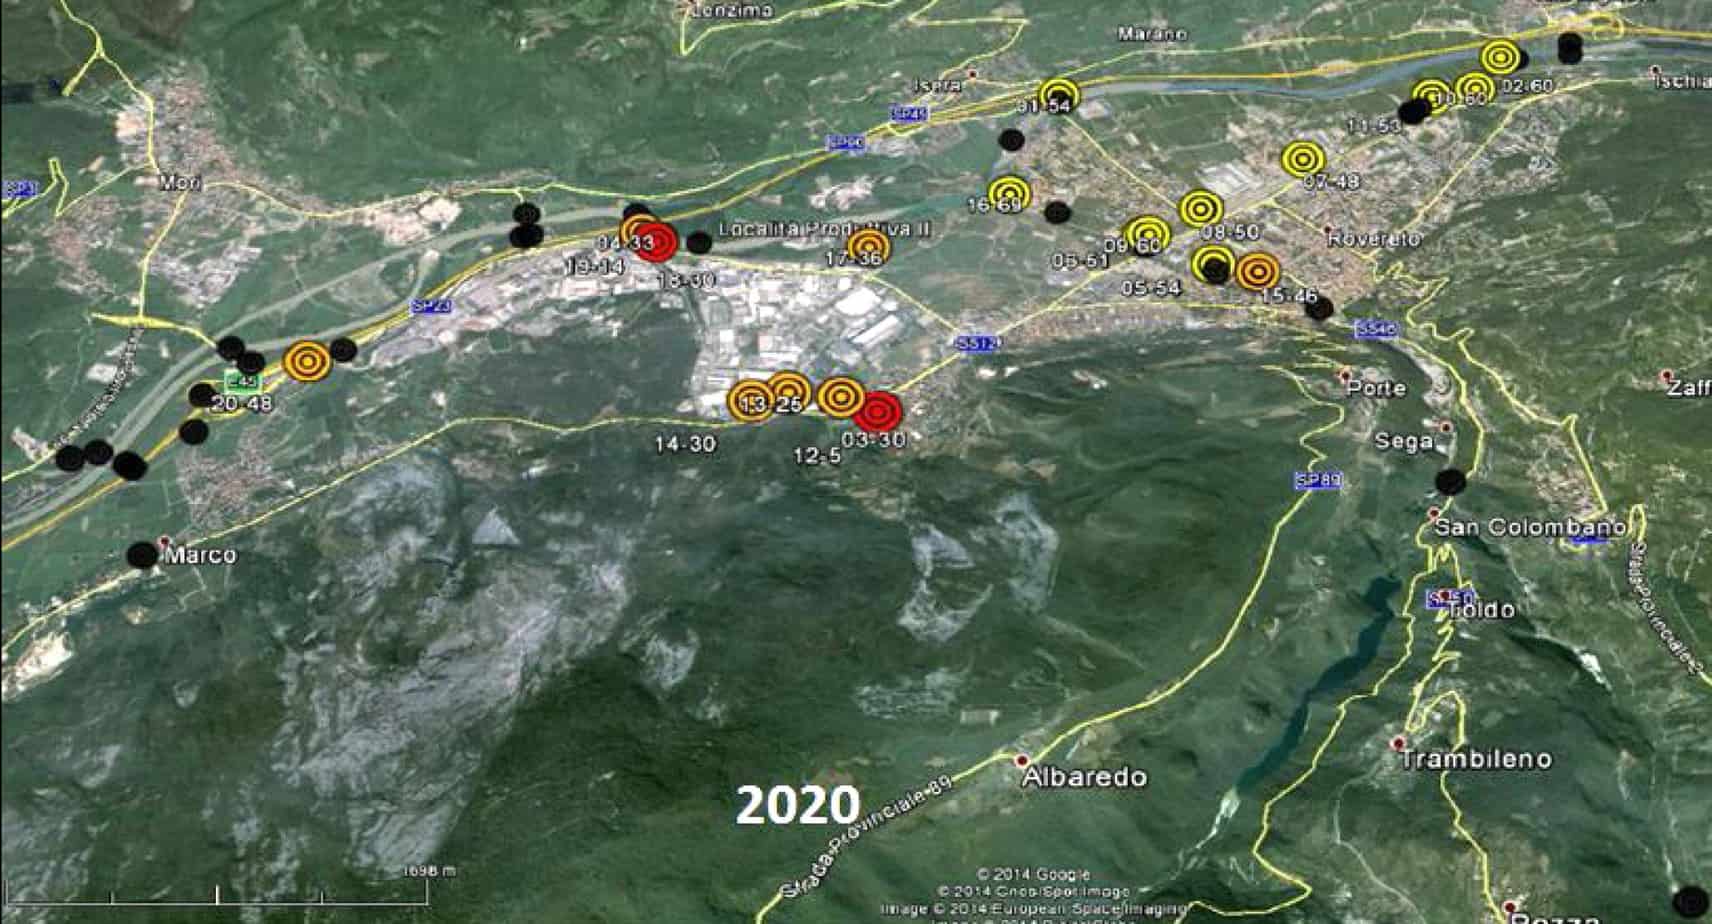 Lo scenario di deterioramento nell’anno 2020 per un gruppo di manufatti situati nel comune di Rovereto